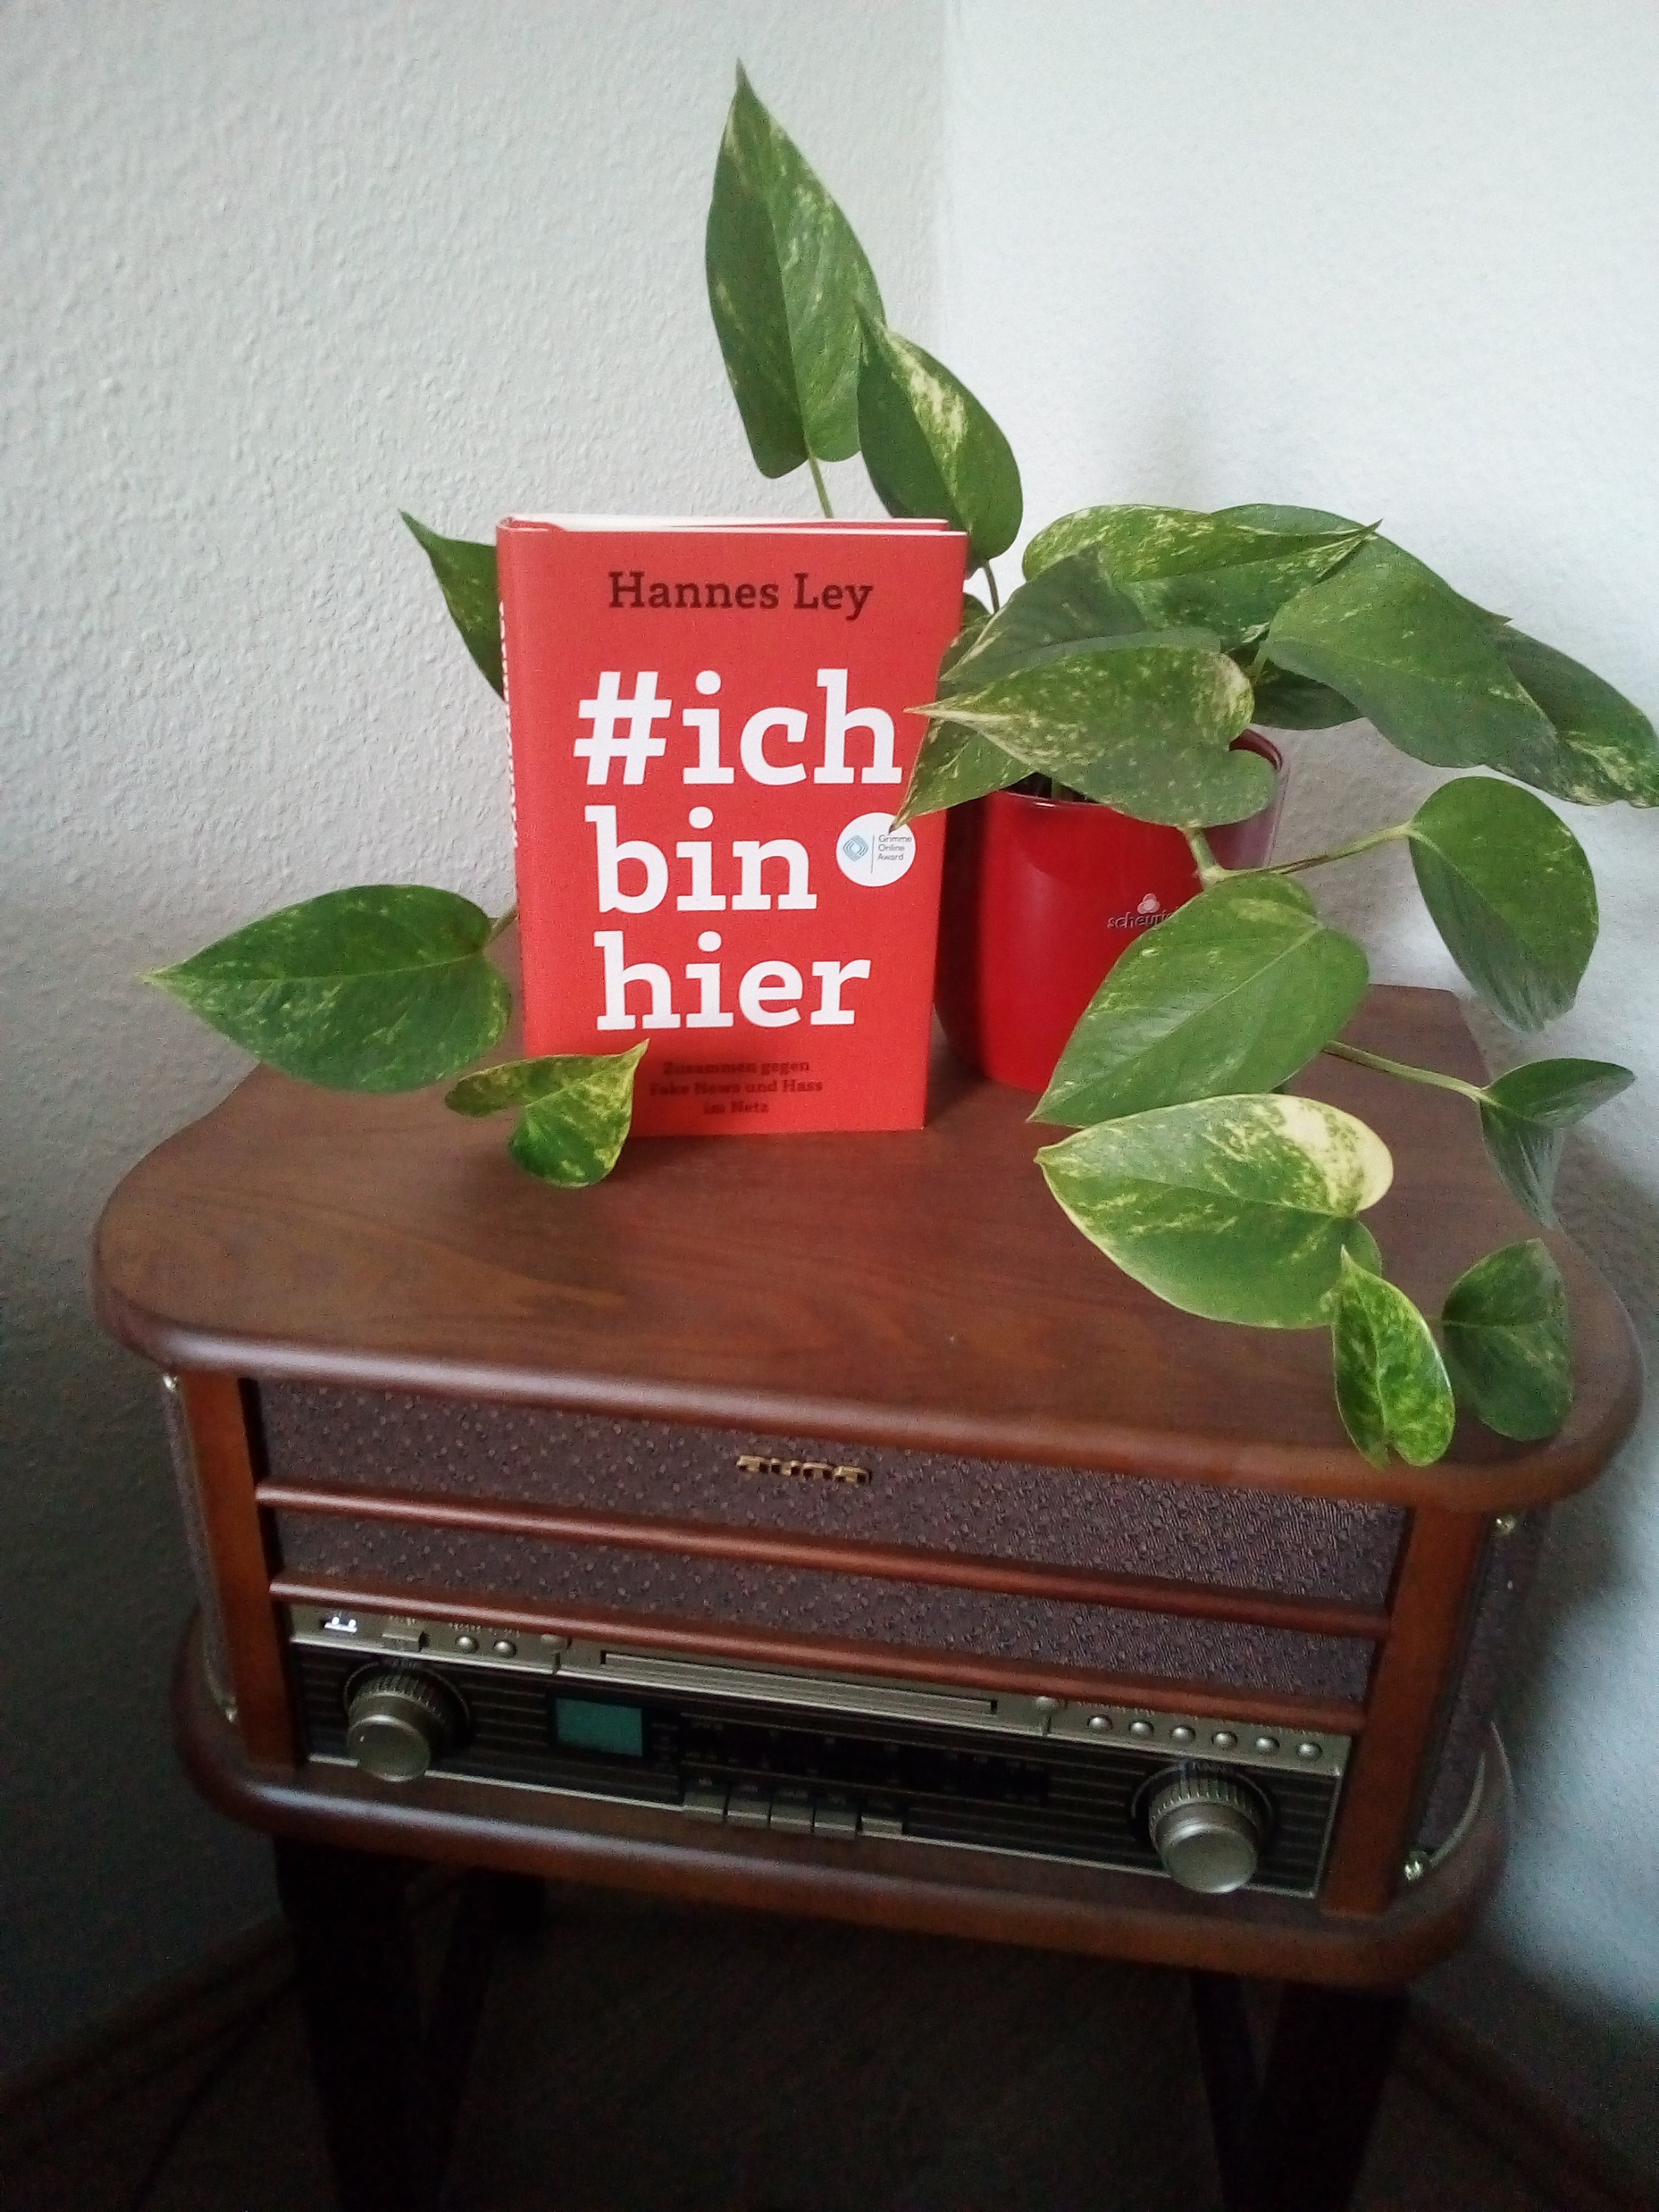 [HateSpeech] #ichbinhier und Handlungstipps für sichere Diskussion im Netz